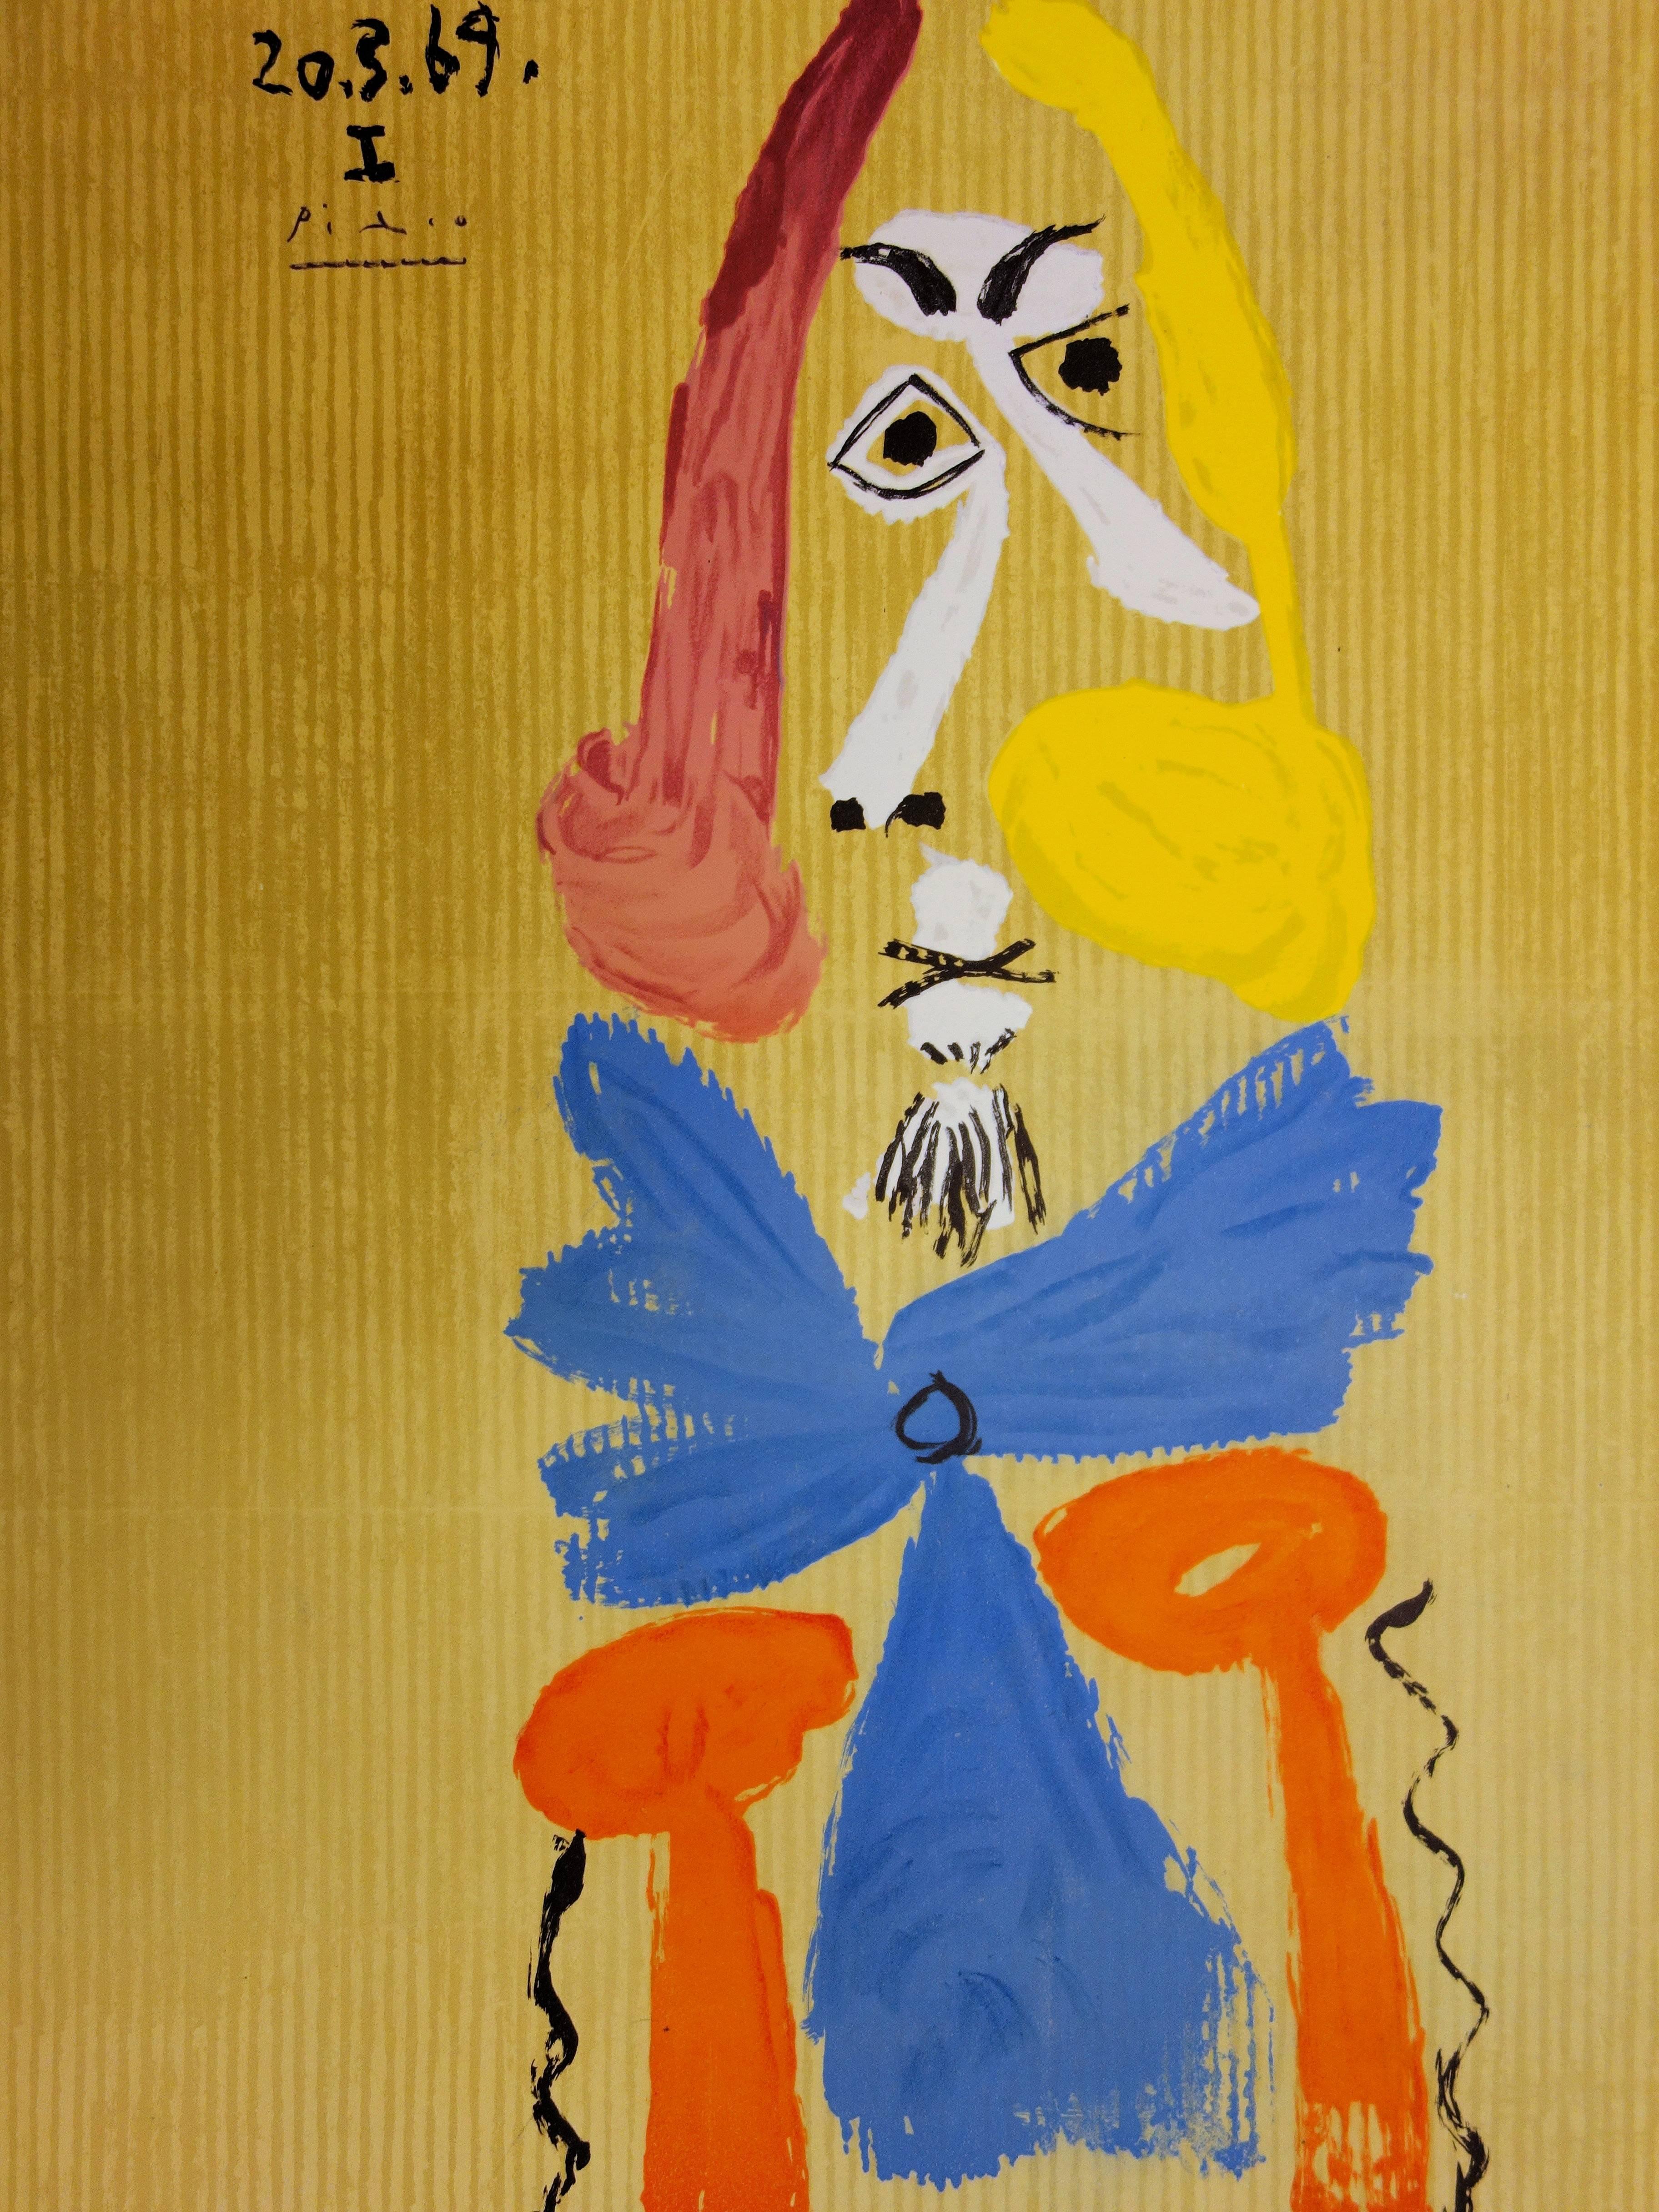 Portraits imaginaires : Homme avec une écharpe bleue - Lithographie - 1971 - Cubisme Print par (after) Pablo Picasso